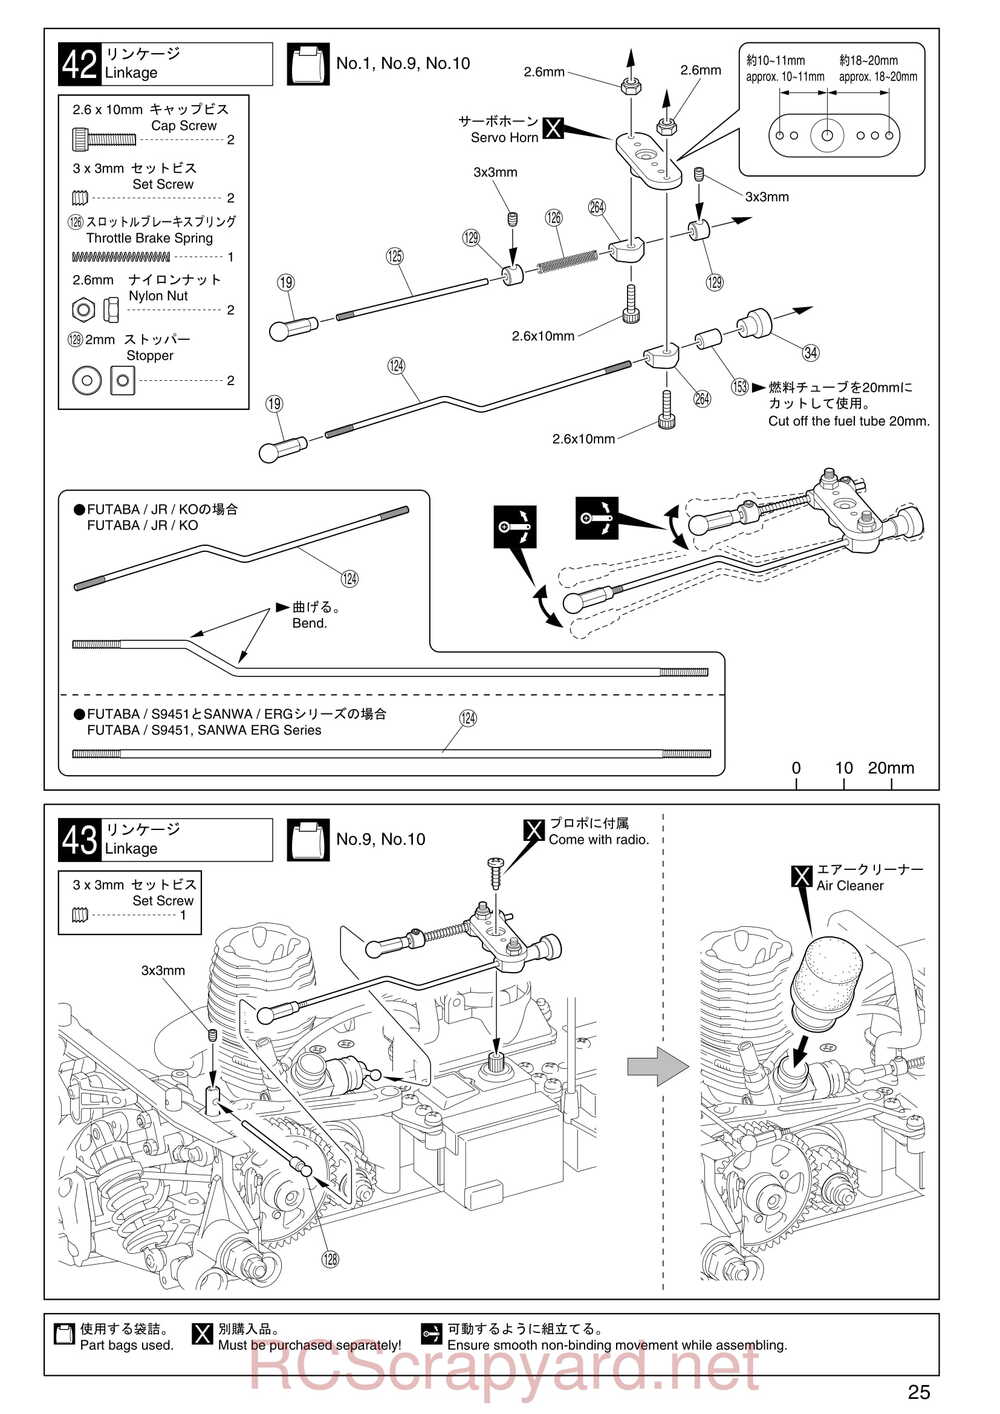 Kyosho - 31255 - V-One RR Evolution - Manual - Page 25